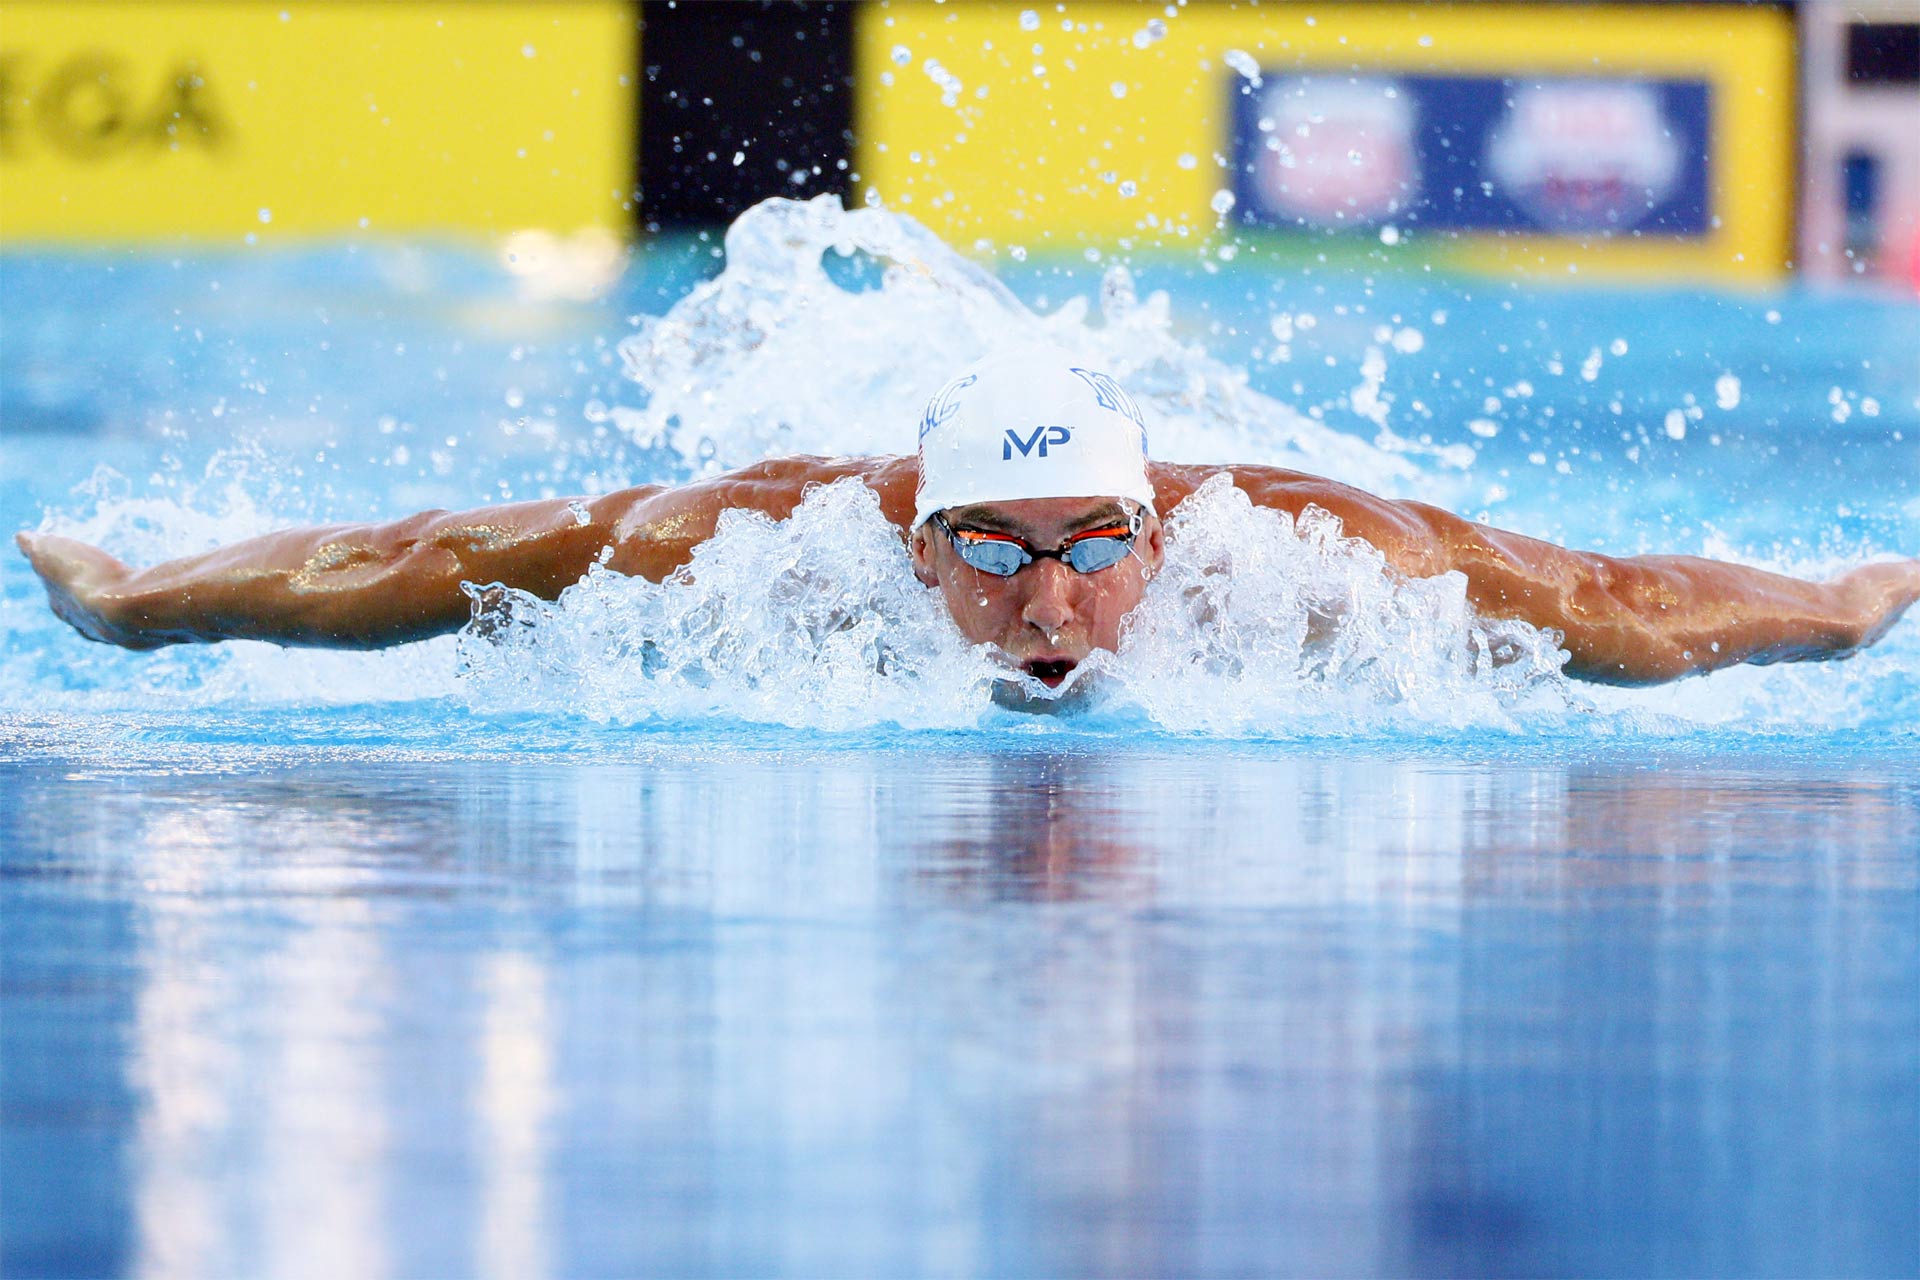 El nadador superó el cronómetro de Ryan Lochteen en los 200 metros de los campeonatos estadounidenses